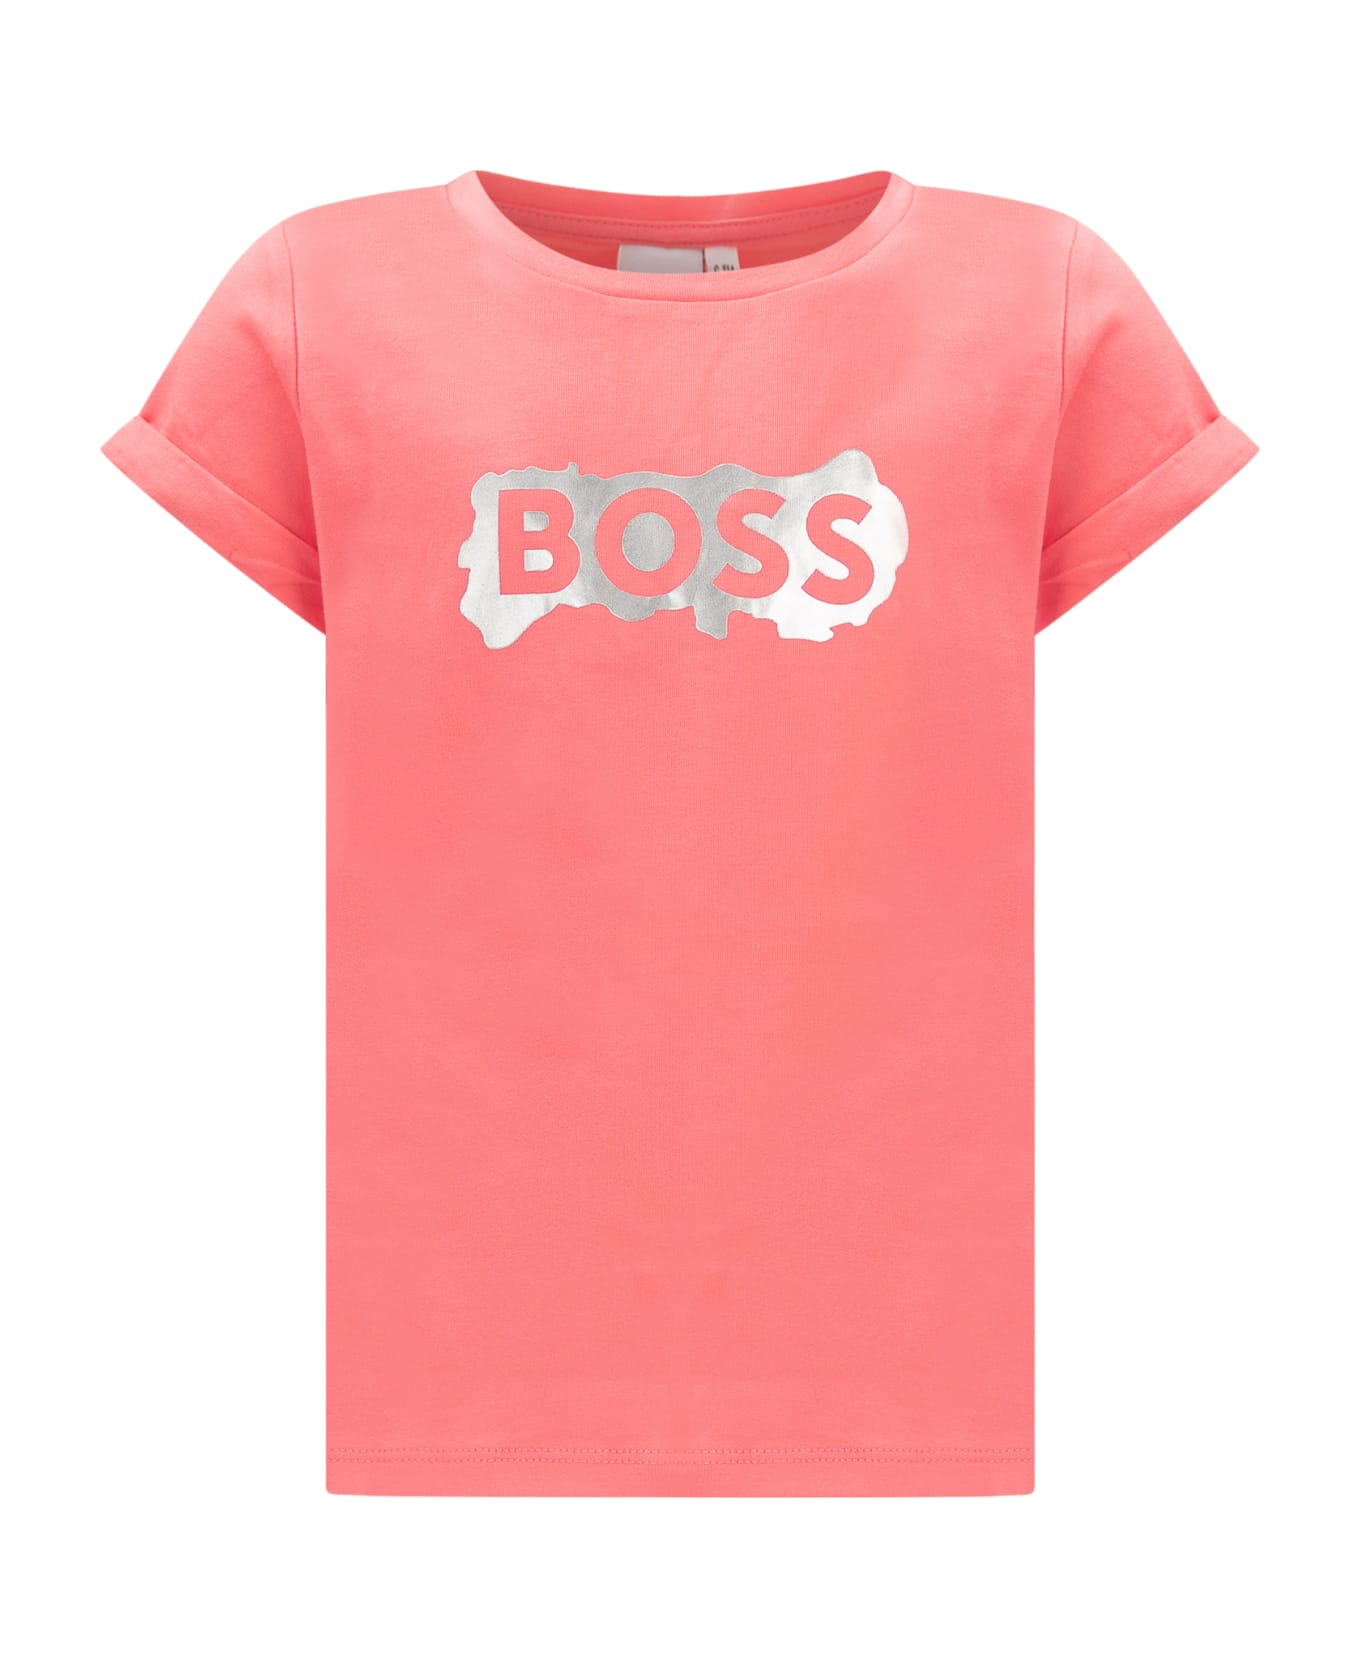 Hugo Boss T-shirt With Print - FUSCHIA